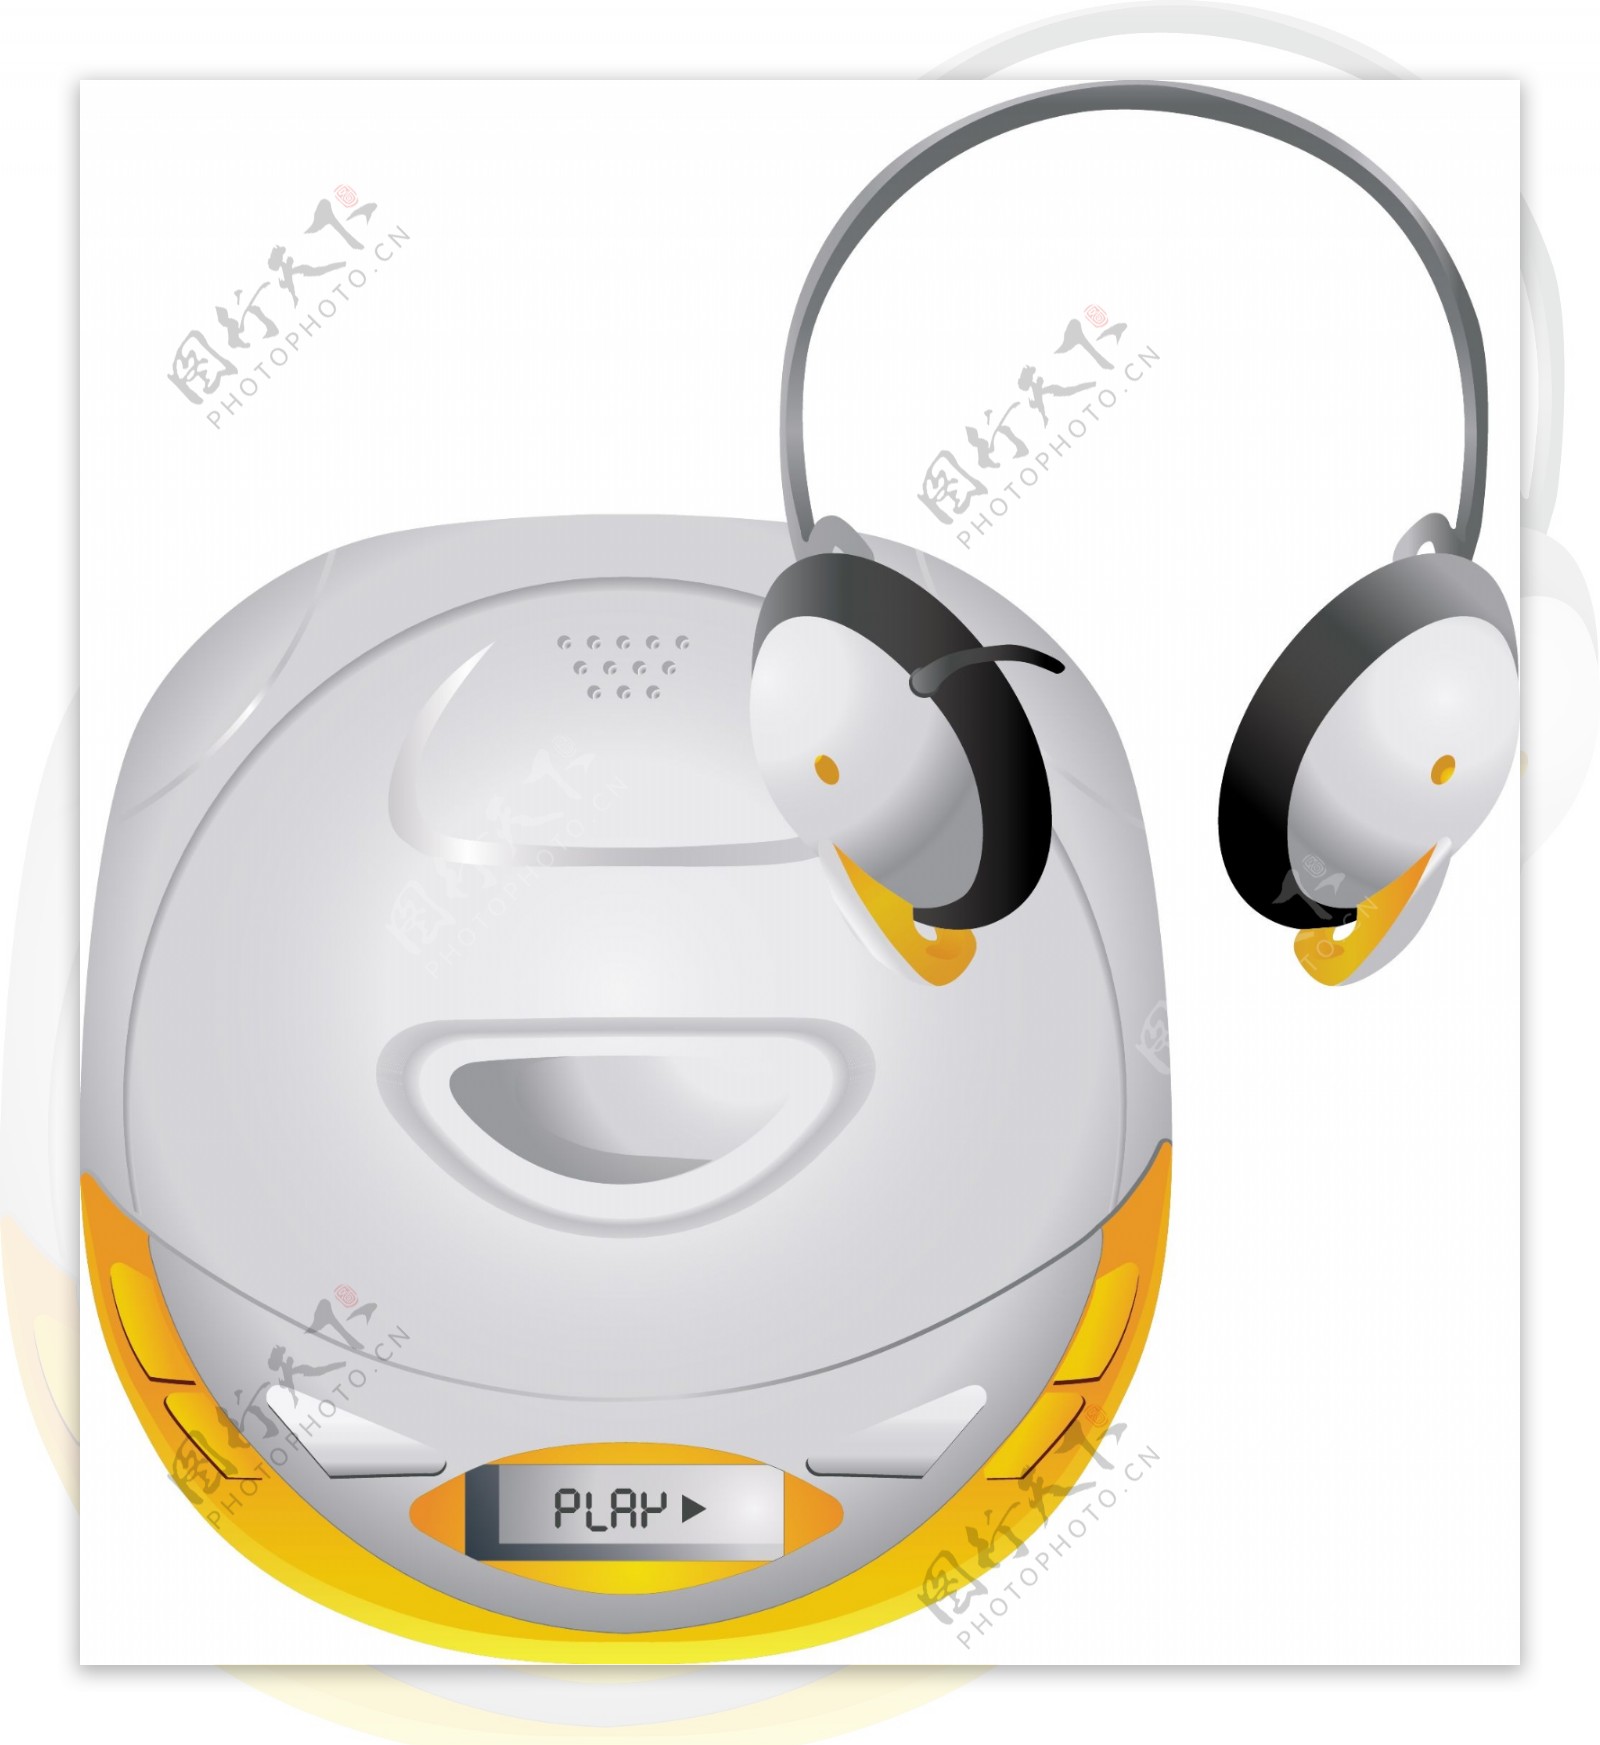 新款 头戴式无线蓝牙耳麦 智能手机通话立体声音乐蓝牙耳机 批发-阿里巴巴